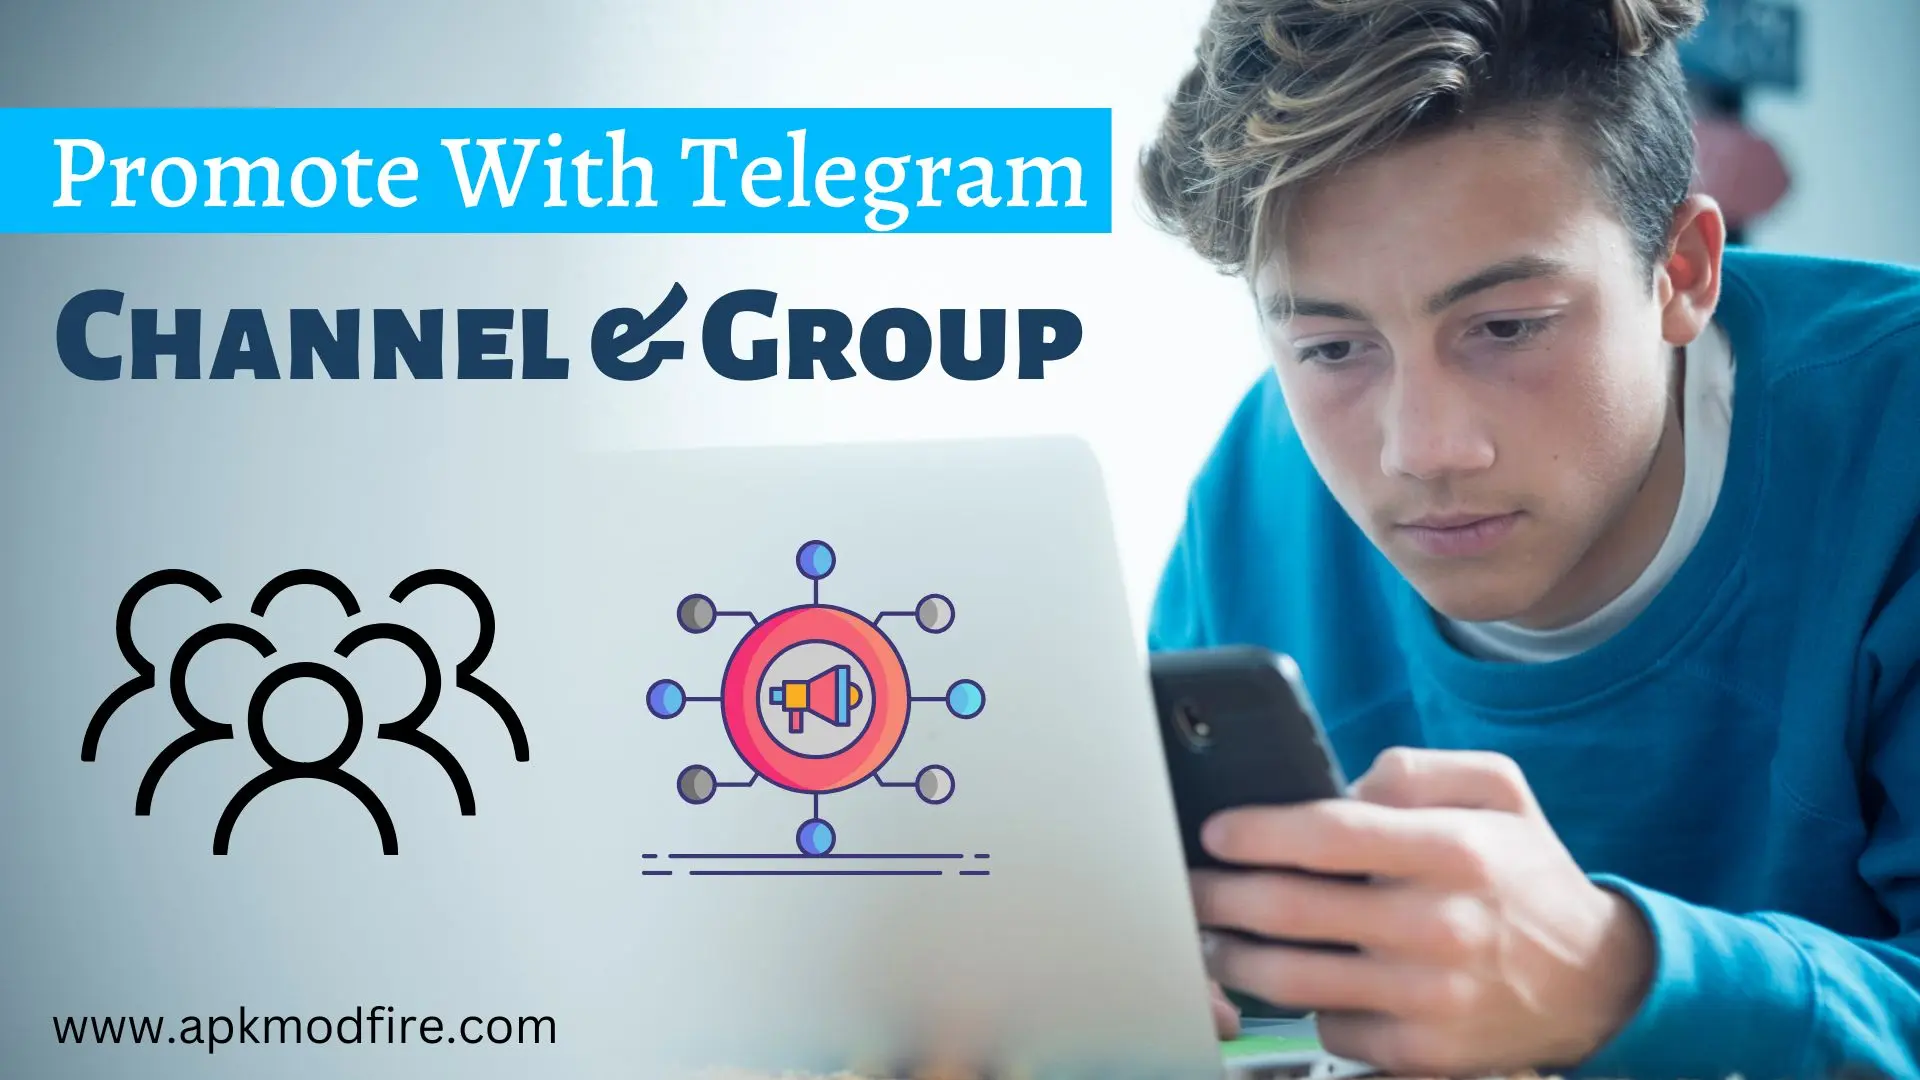 Promote Telegram Channel & Group using Telegram Bot